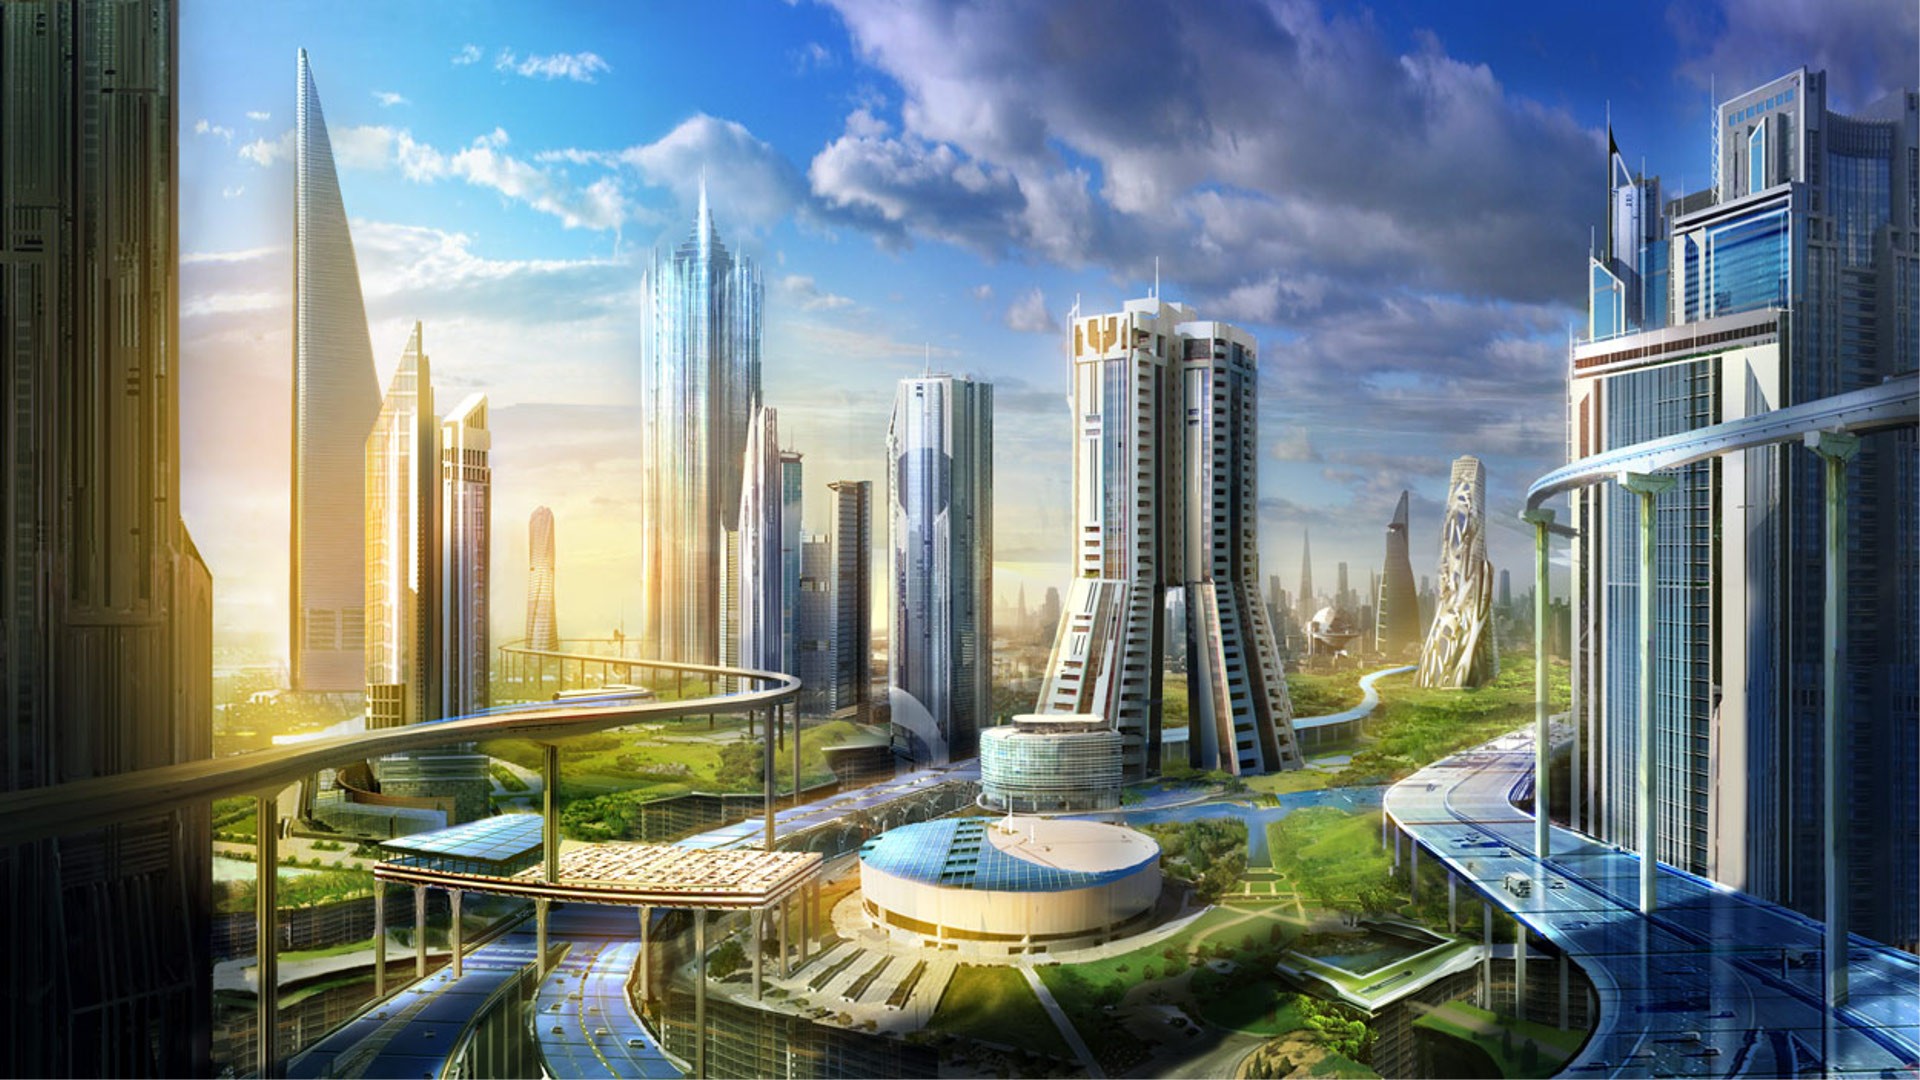 General 1920x1080 futuristic architecture landscape city science fiction cityscape futuristic city digital art CGI sunlight artwork